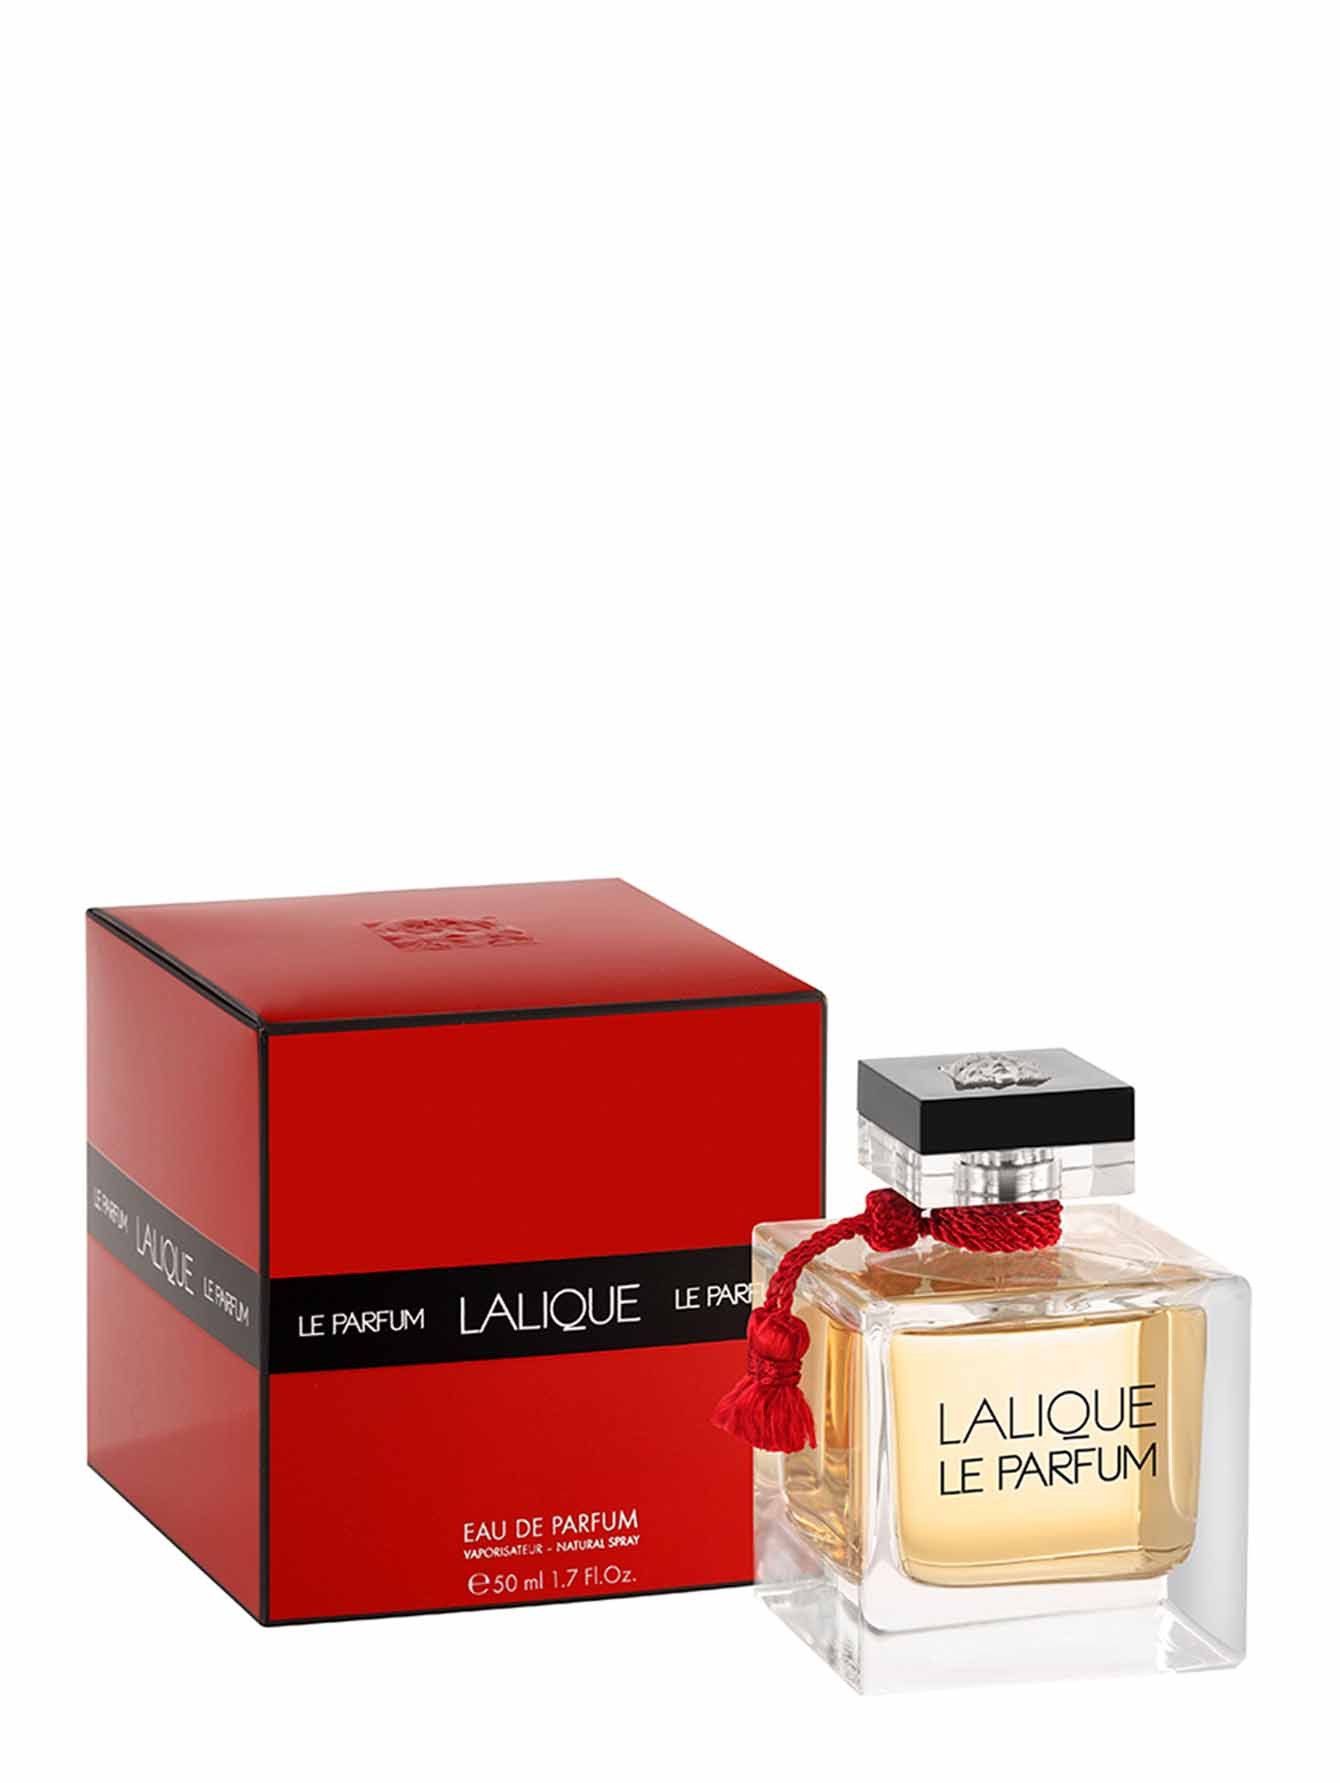 Парфюмерная вода Le Parfum de Lalique, 50 мл - Общий вид